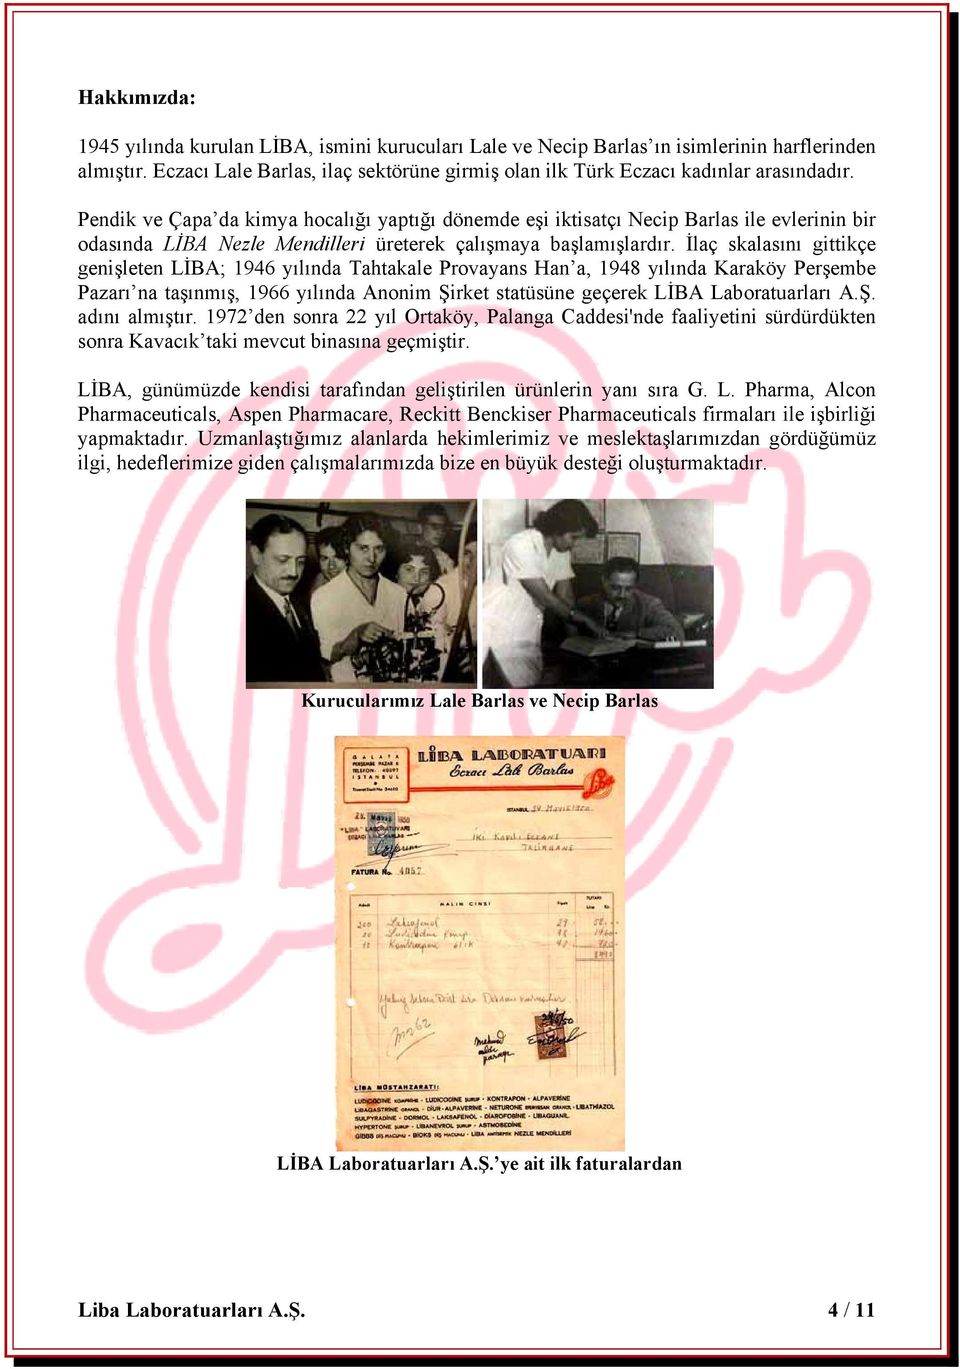 İlaç skalasını gittikçe genişleten LİBA; 1946 yılında Tahtakale Provayans Han a, 1948 yılında Karaköy Perşembe Pazarı na taşınmış, 1966 yılında Anonim Şirket statüsüne geçerek LİBA Laboratuarları A.Ş. adını almıştır.